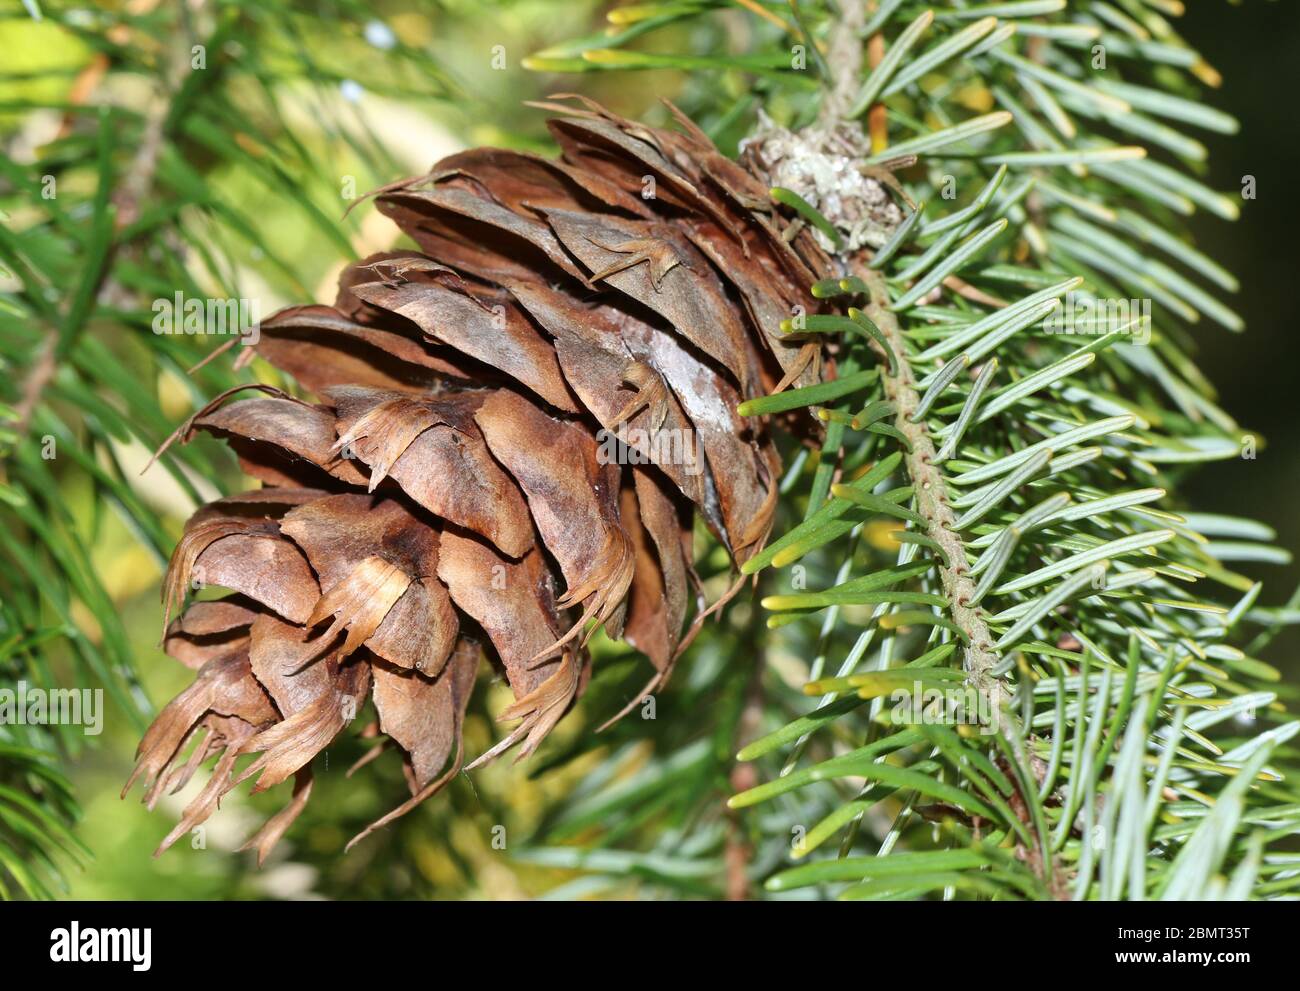 Cône d'un arbre de Douglas-Fir, Pseudotsuga menziesii, qui pousse dans les bois au Royaume-Uni. Banque D'Images